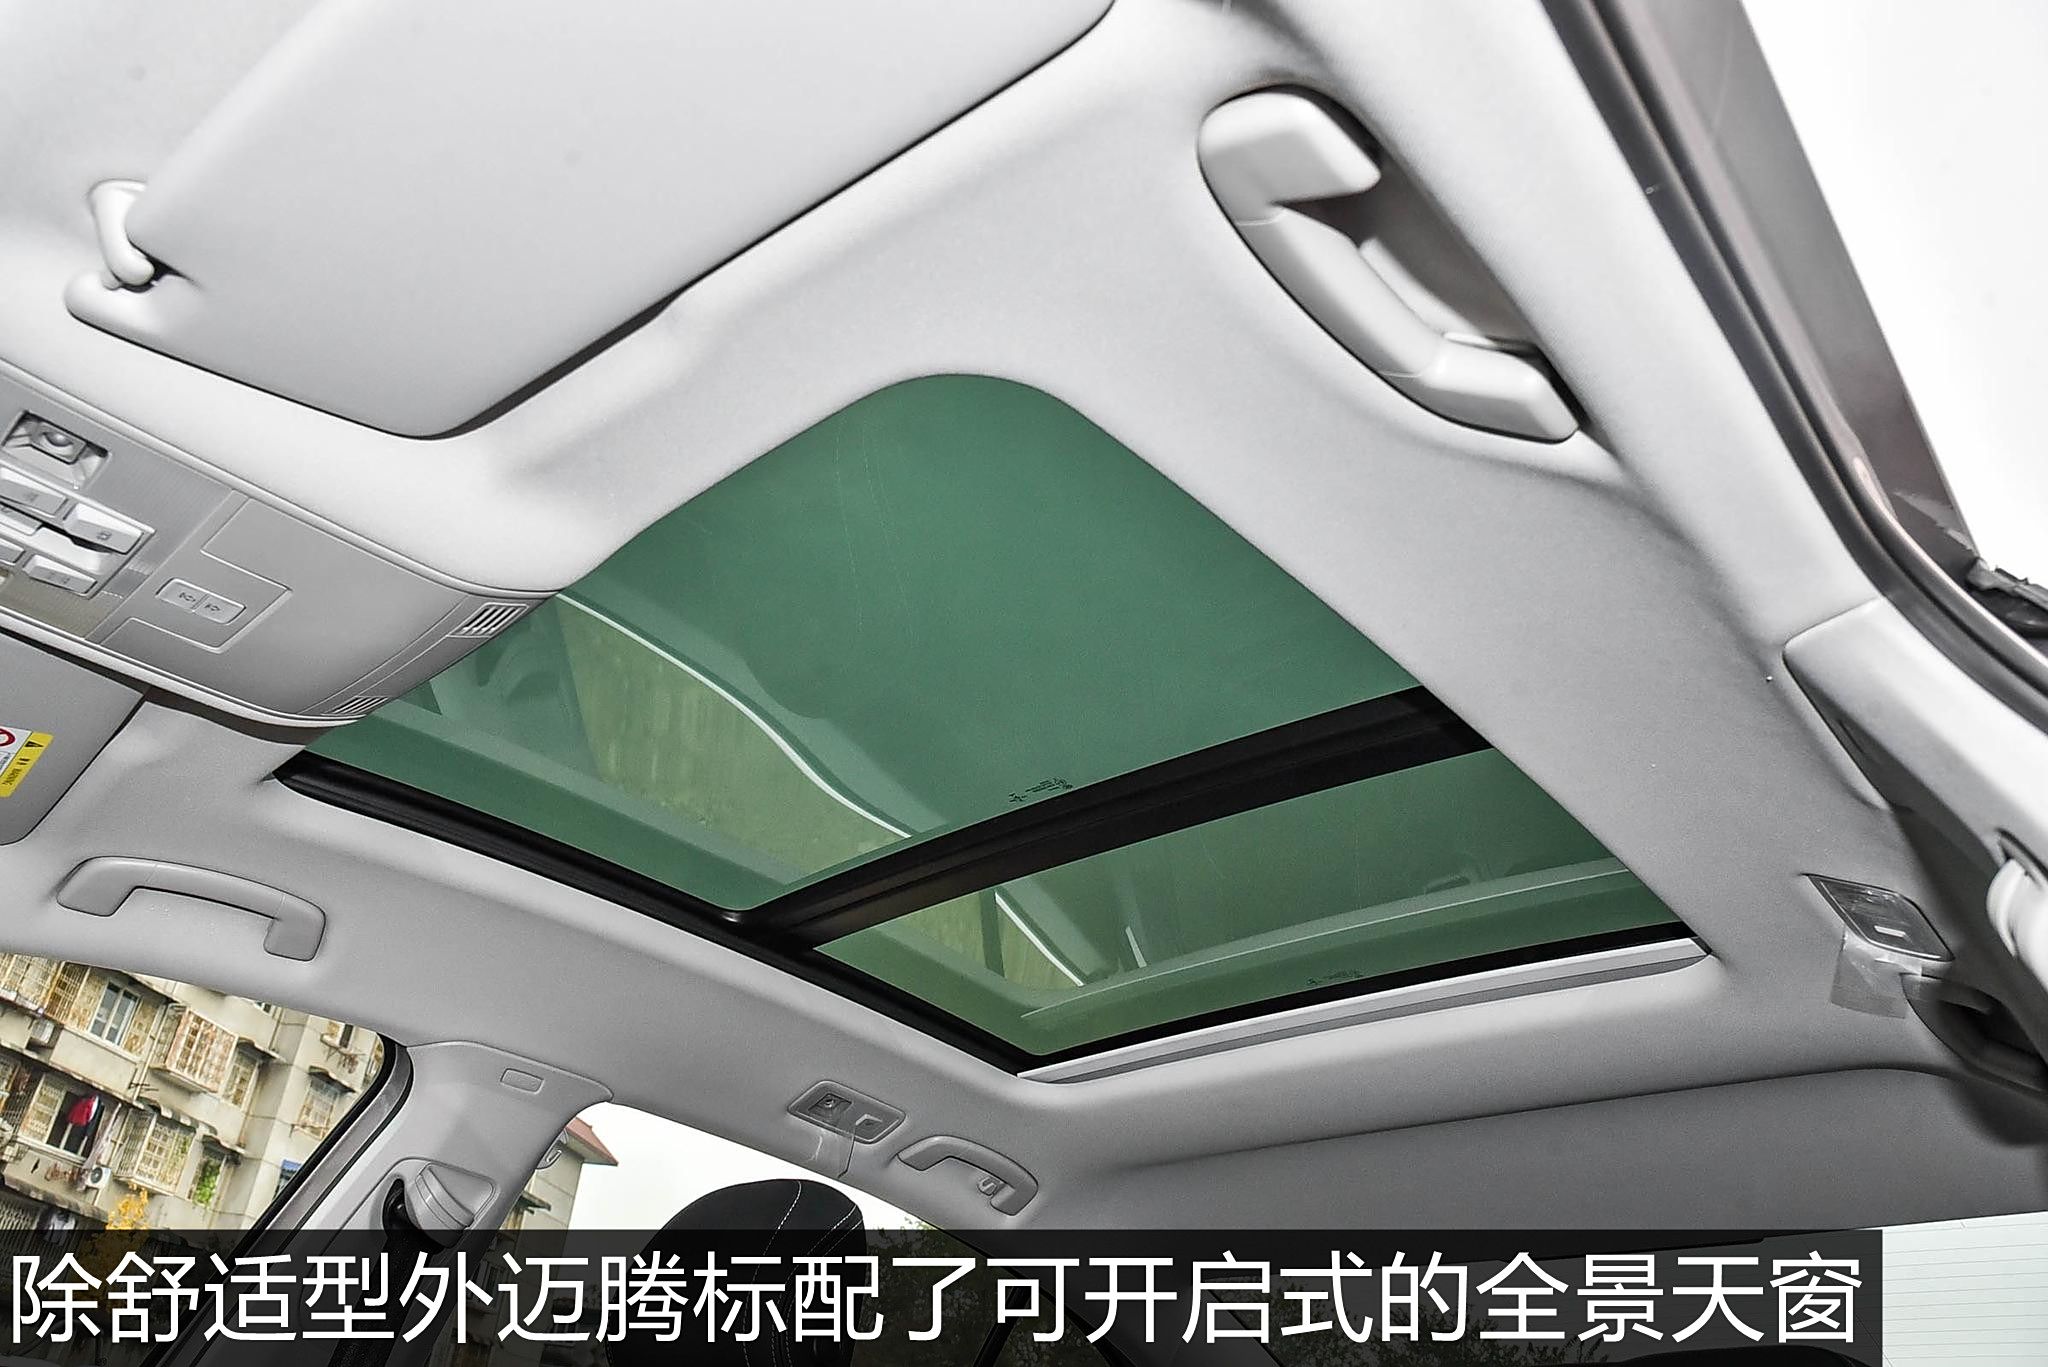 除舒适型外,迈腾标配了可开启式的全景天窗.